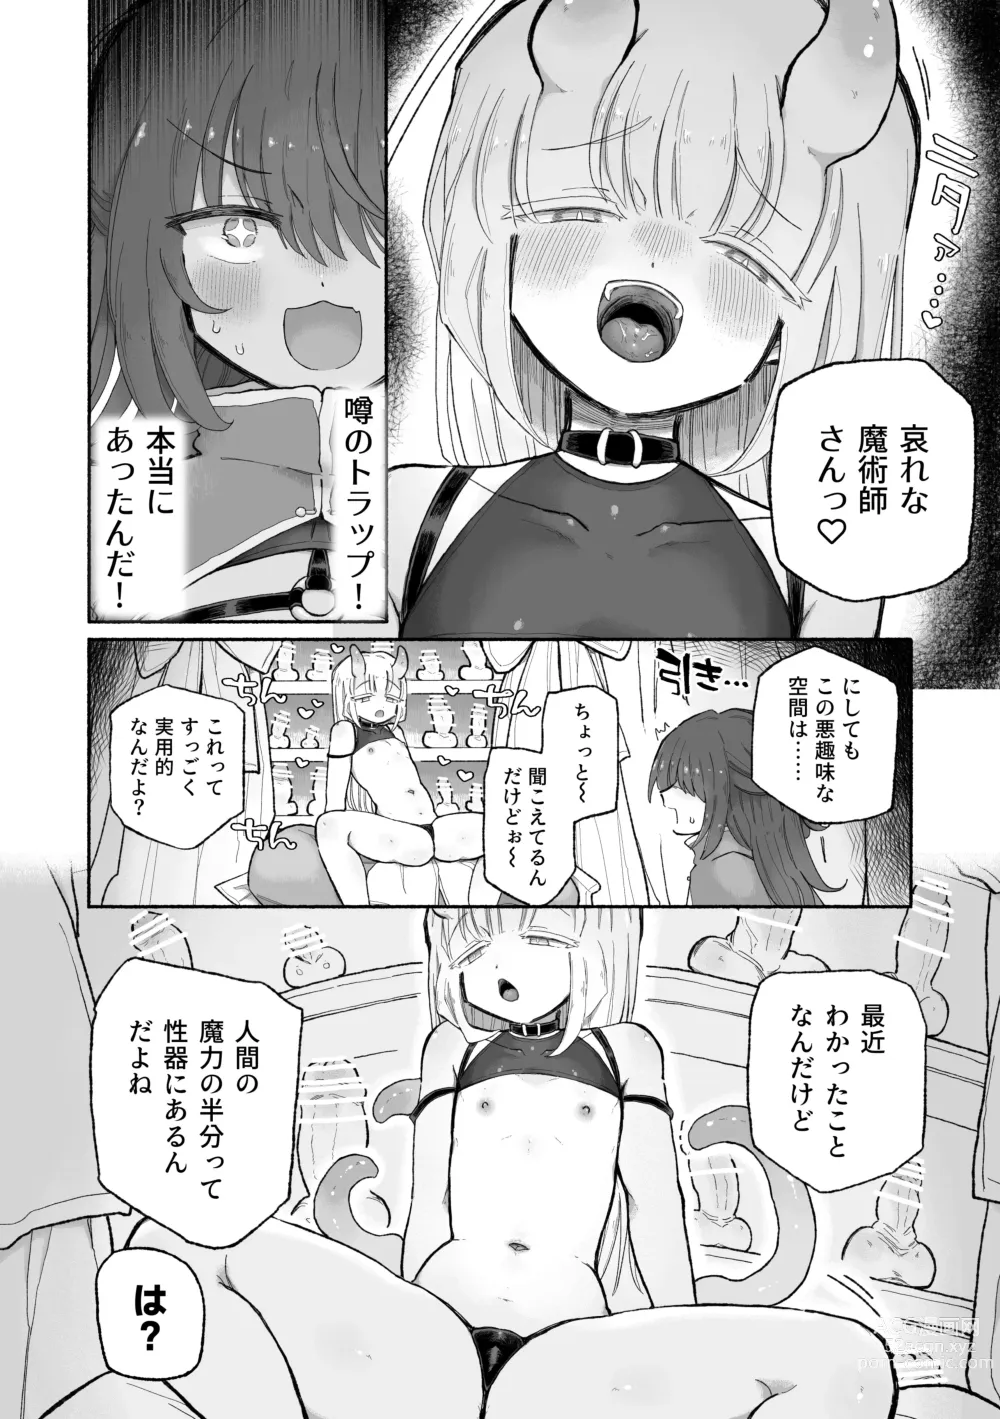 Page 6 of doujinshi Do hamari chui no kyosei danjon! 〜Mugen shasei no kairaku jigoku e yokoso〜